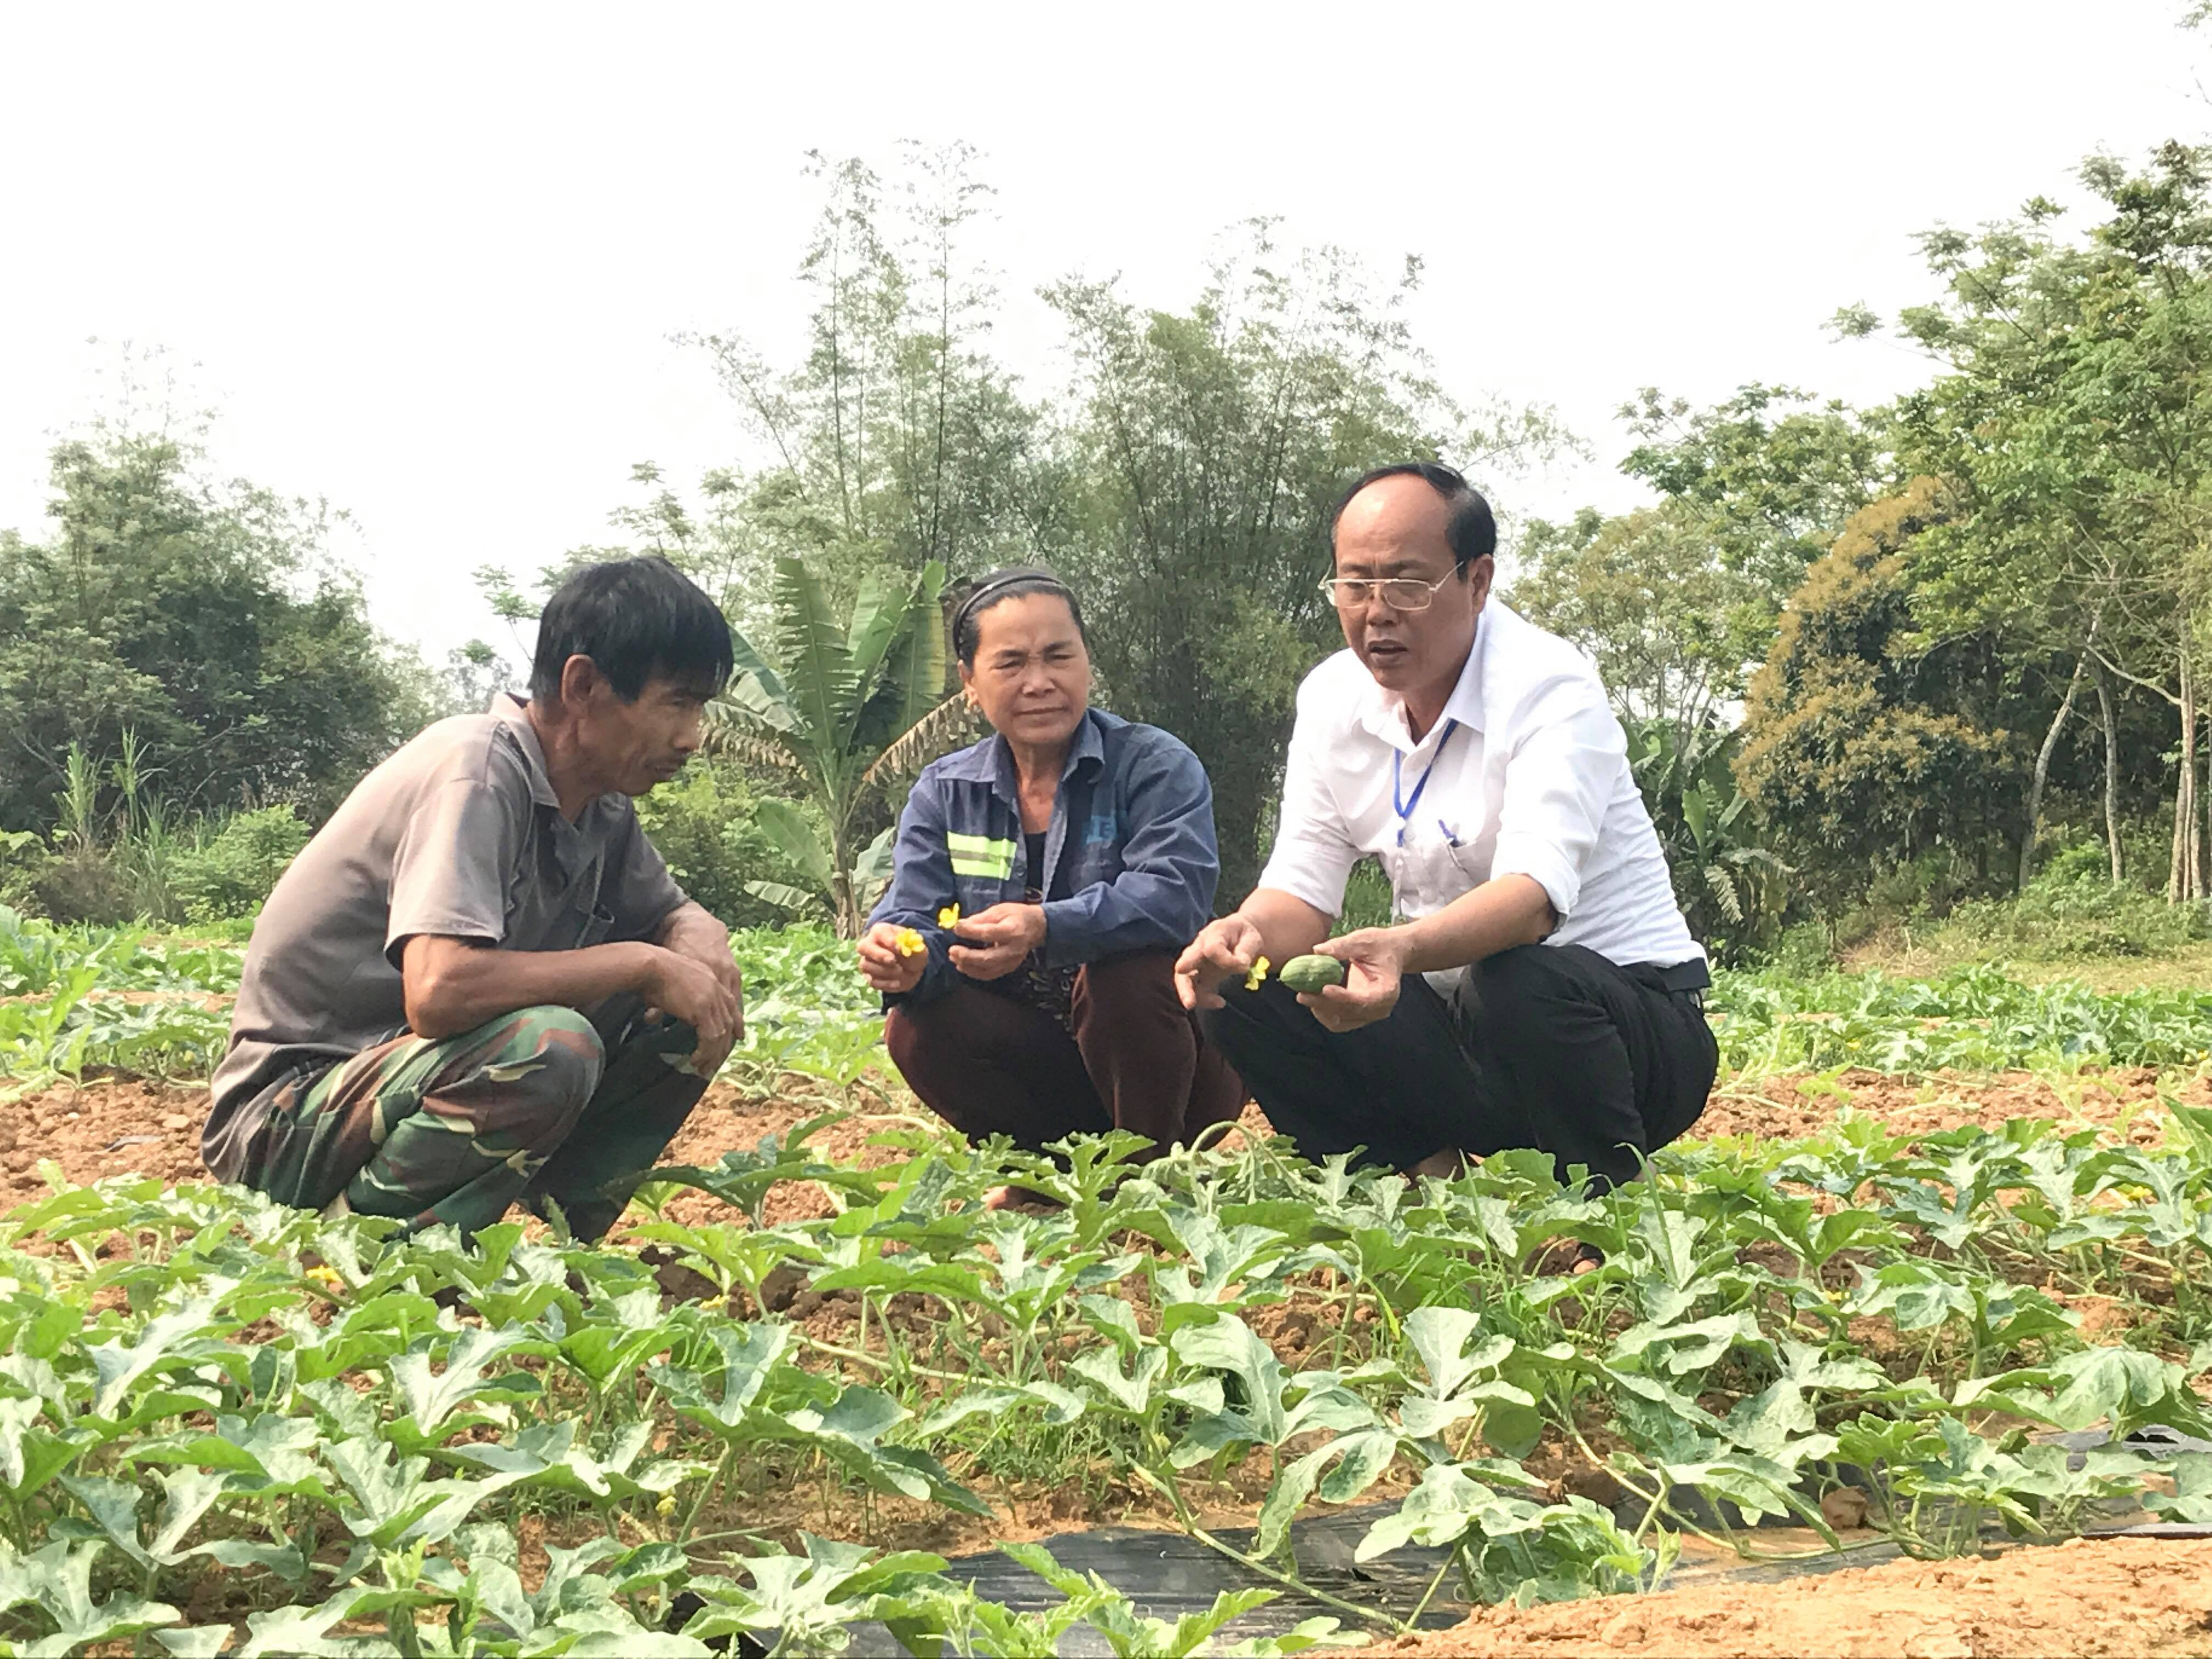 Cán bộ Trạm Khuyến nông và Trạm Trồng trọt và BVTV hướng dẫn cho bà con cách chăm sóc cây dưa. Ảnh: Minh Thái